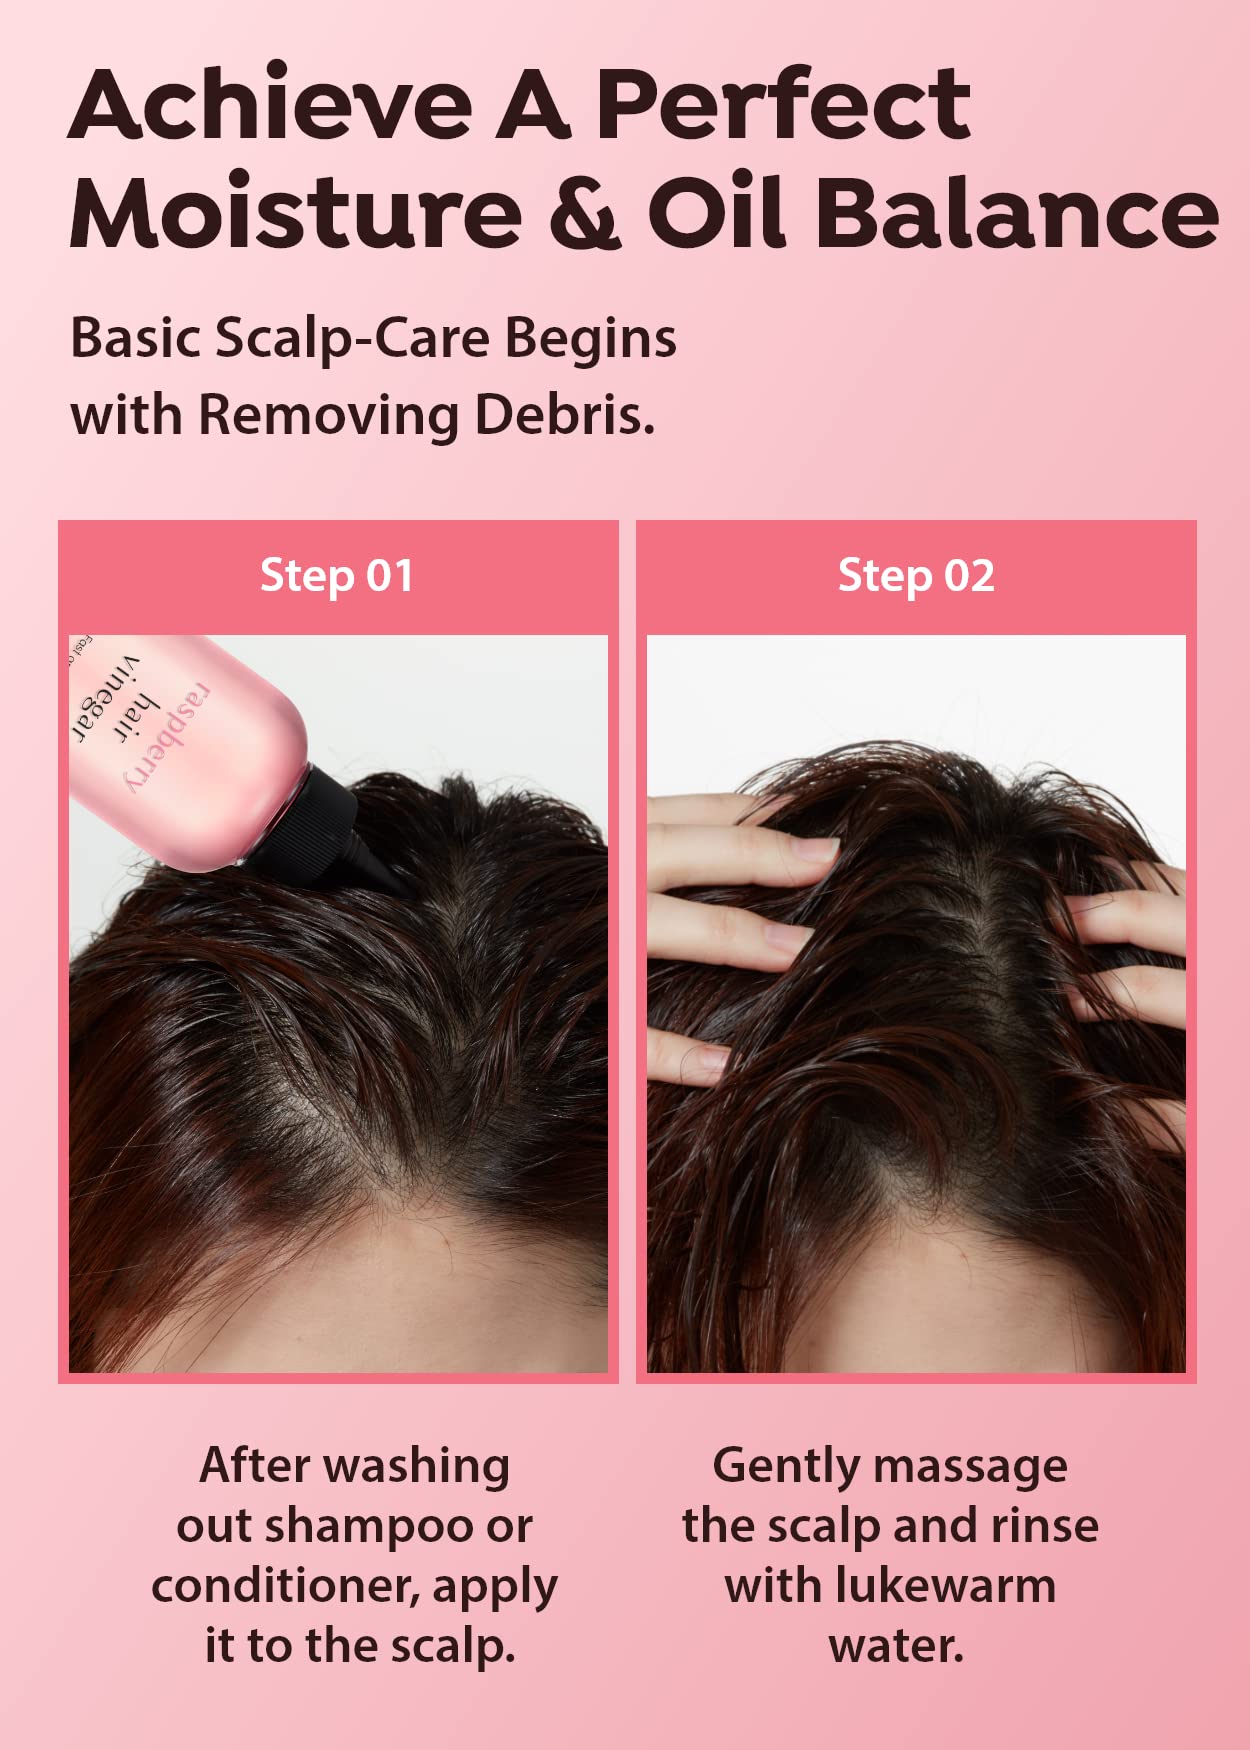 A’PIEU Raspberry Hair Vinegar Rinse 6.76 Fl oz - Scalp Treatment for Balanced pH, Shiny Hair | Clarifies & Encourages Growth | Dandruff & Oil Control